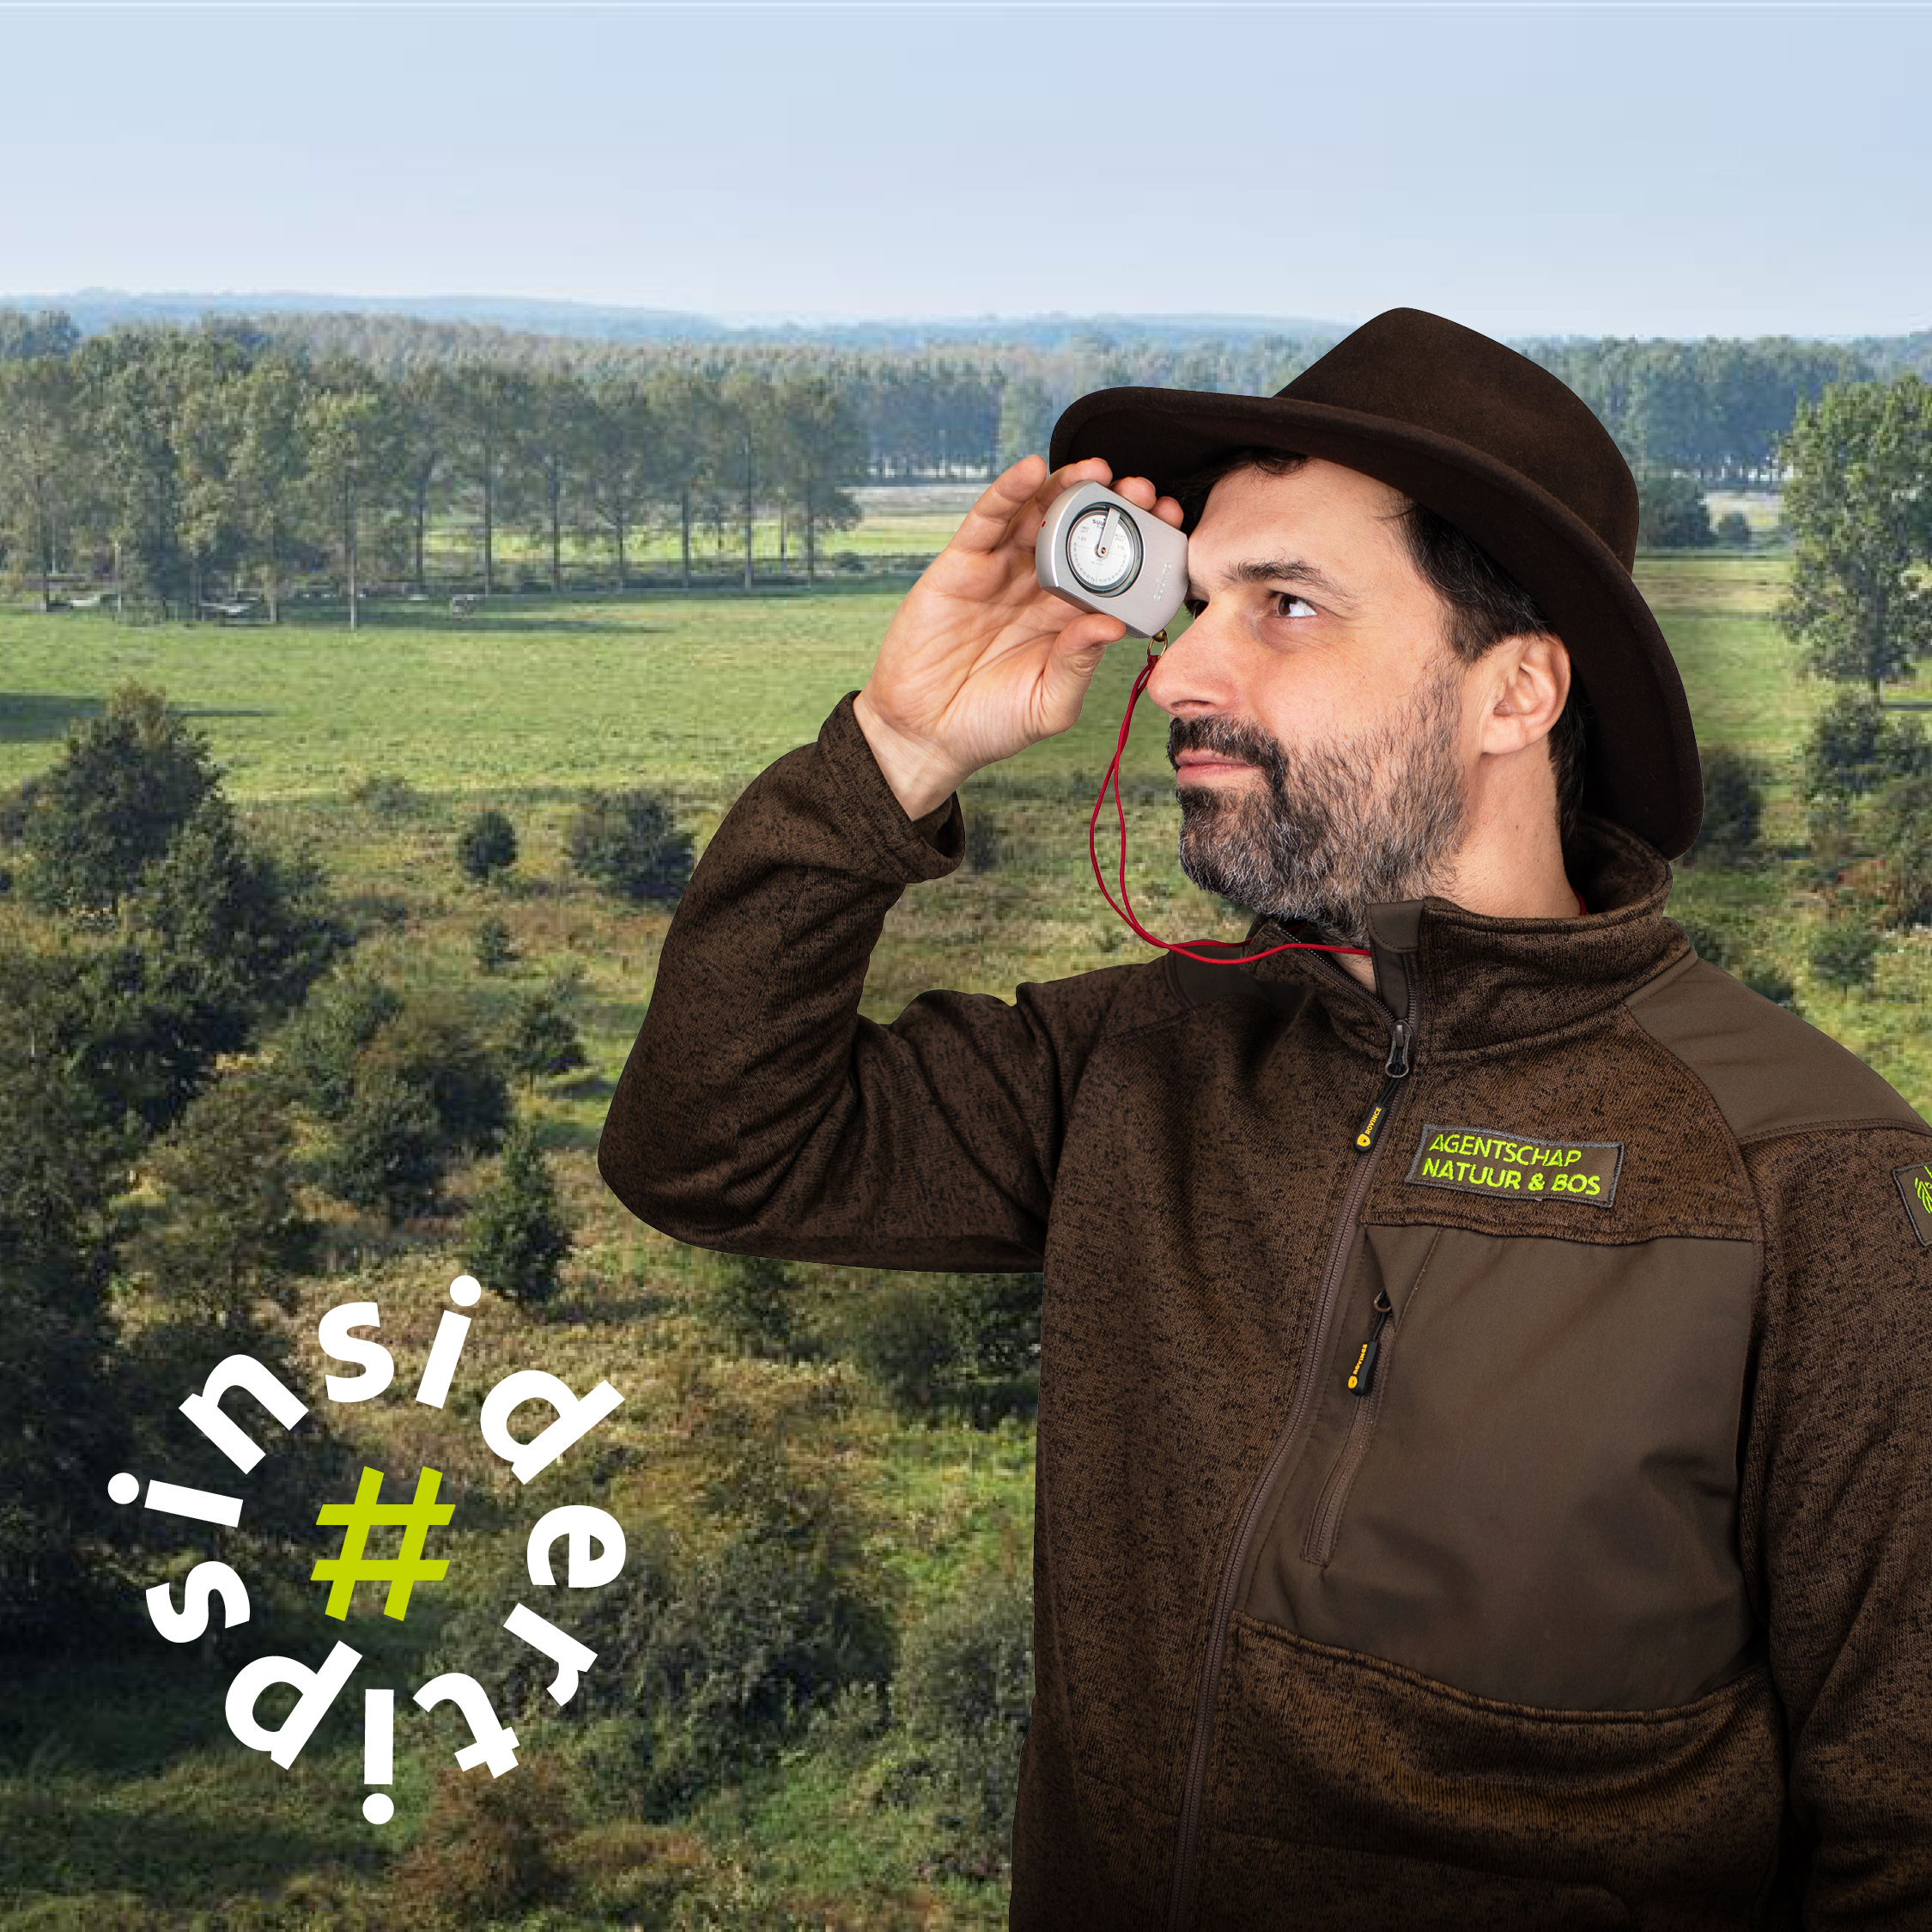 Boswachter Gijs die een digitale hoogtemeter voor zijn ogen houdt, met een bos op de achtergrond